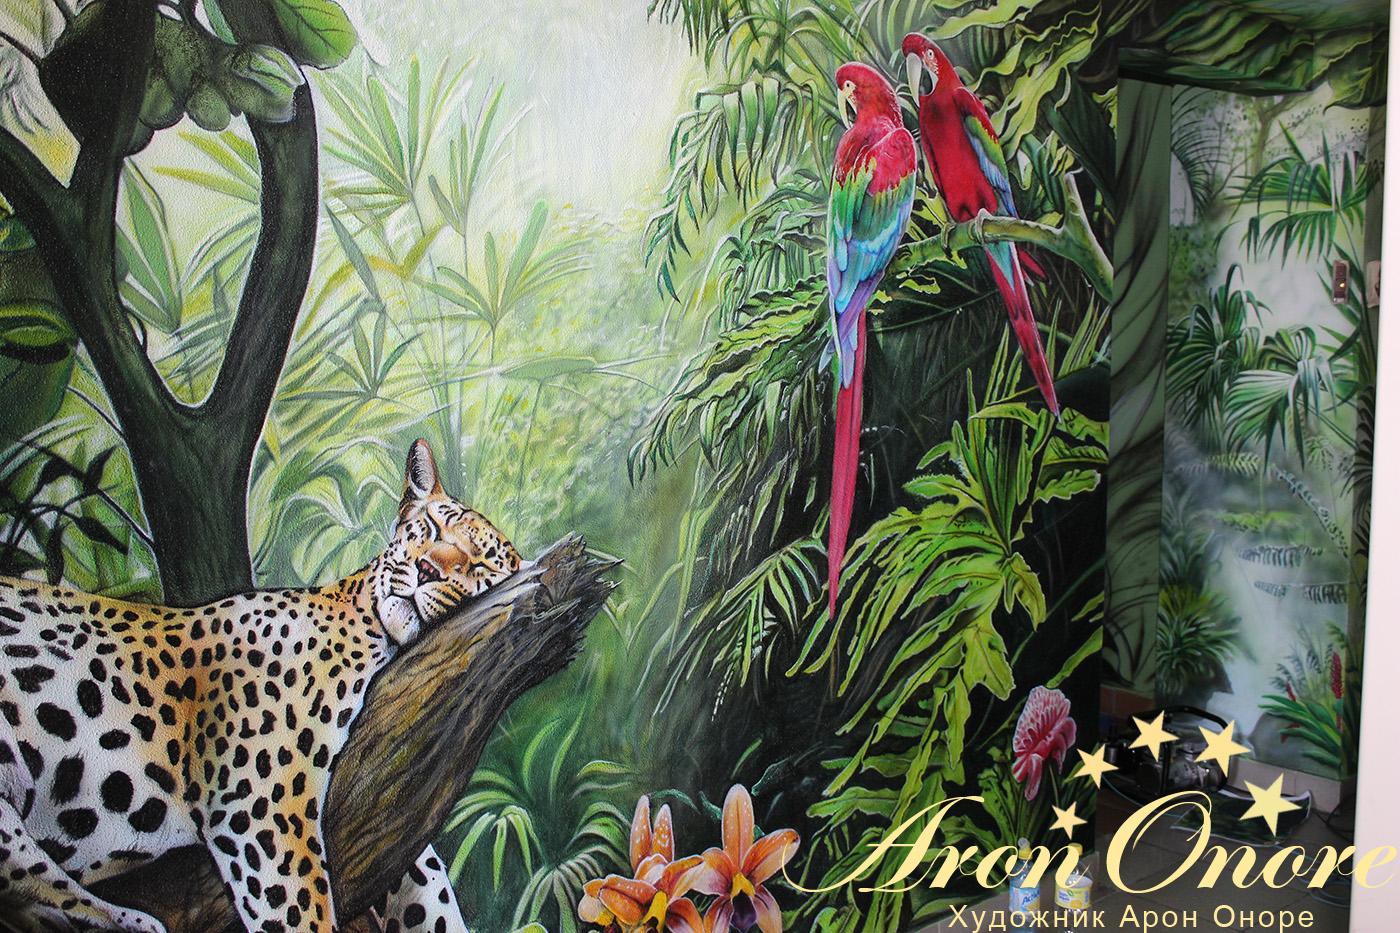 Готовый рисунок: спящий гепард, попугаи на ветках и тропические деревья – Джунгли на стене в подъезде